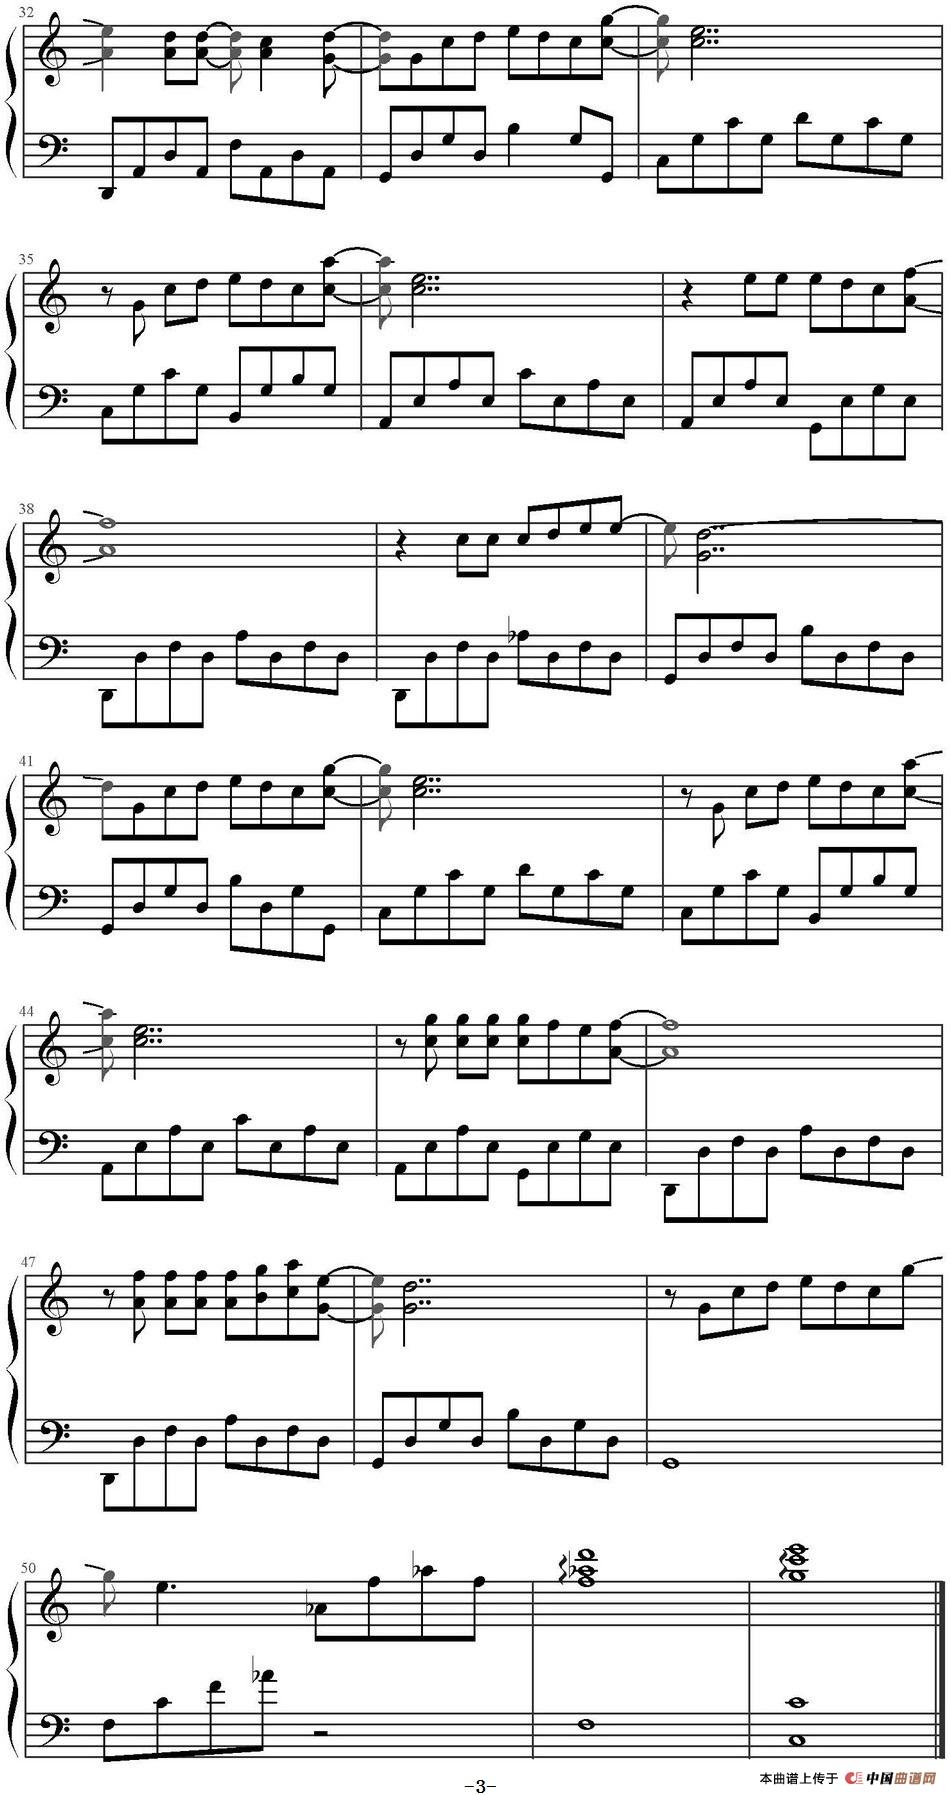 《星星》钢琴曲谱图分享